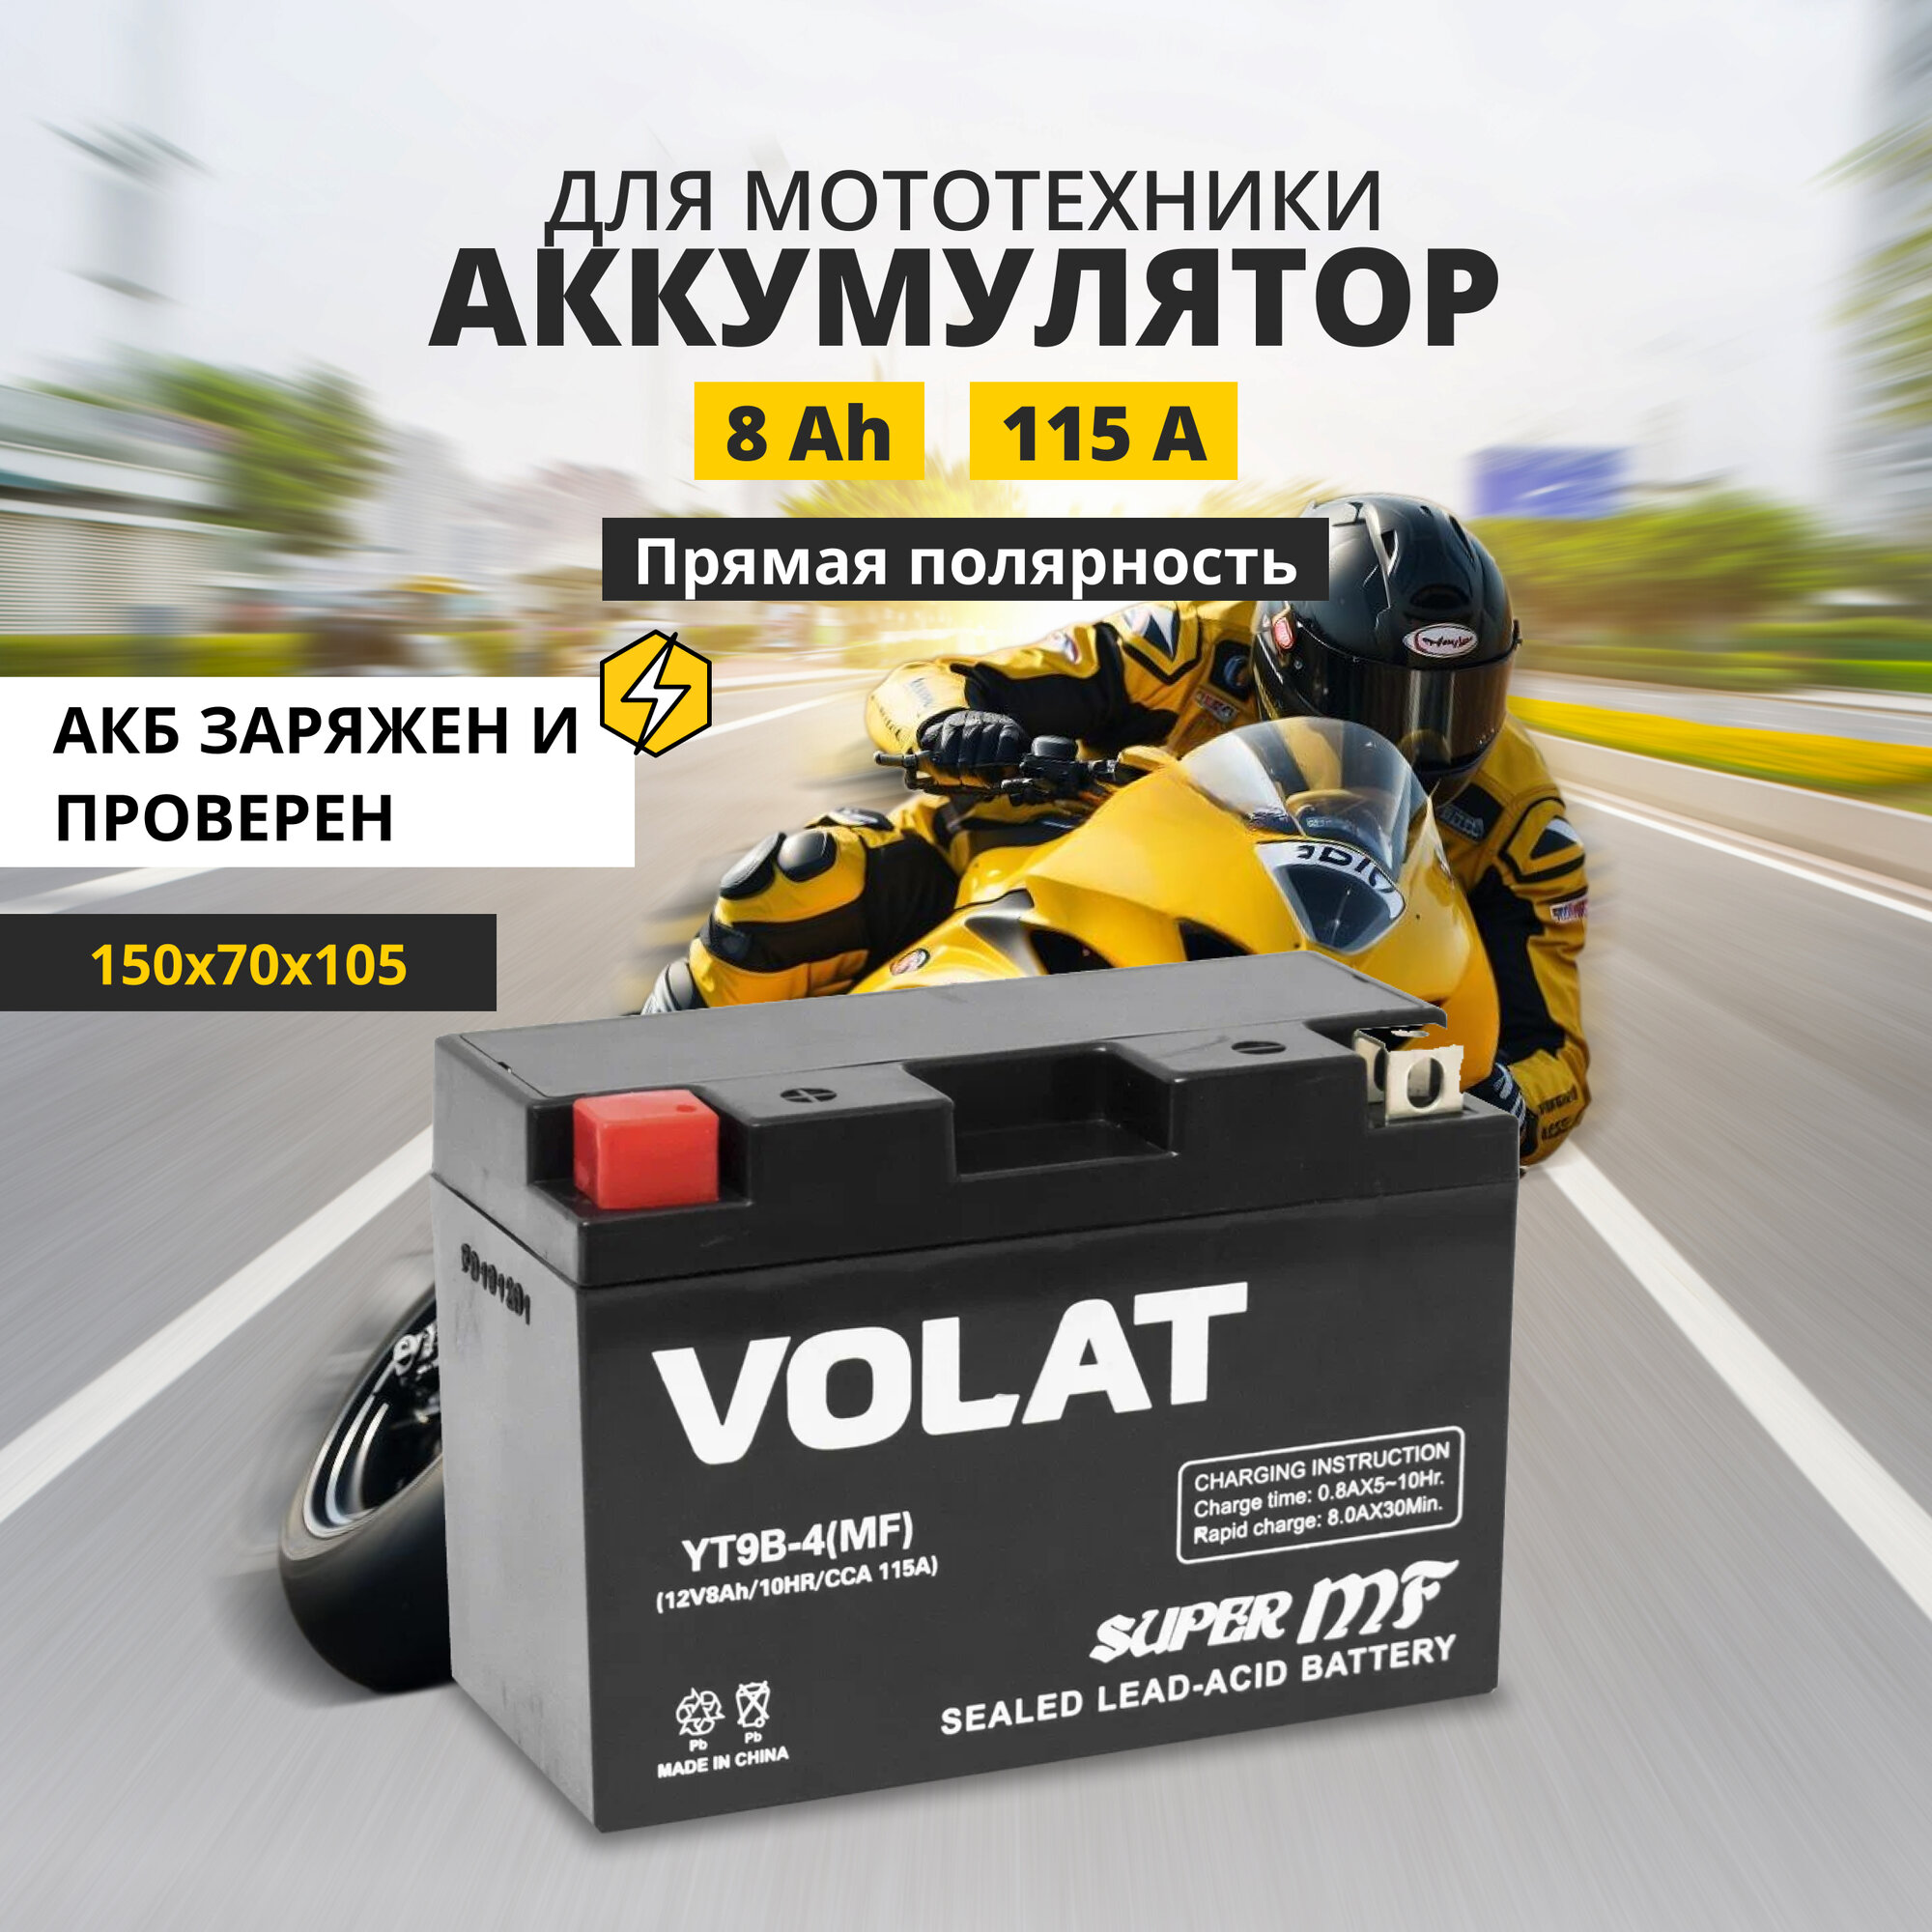 Аккумулятор для мотоцикла 12v Volat YT9B-4(MF) прямая полярность 8 Ah 115 A AGM, акб на скутер, мопед, квадроцикл 150x70x105 мм